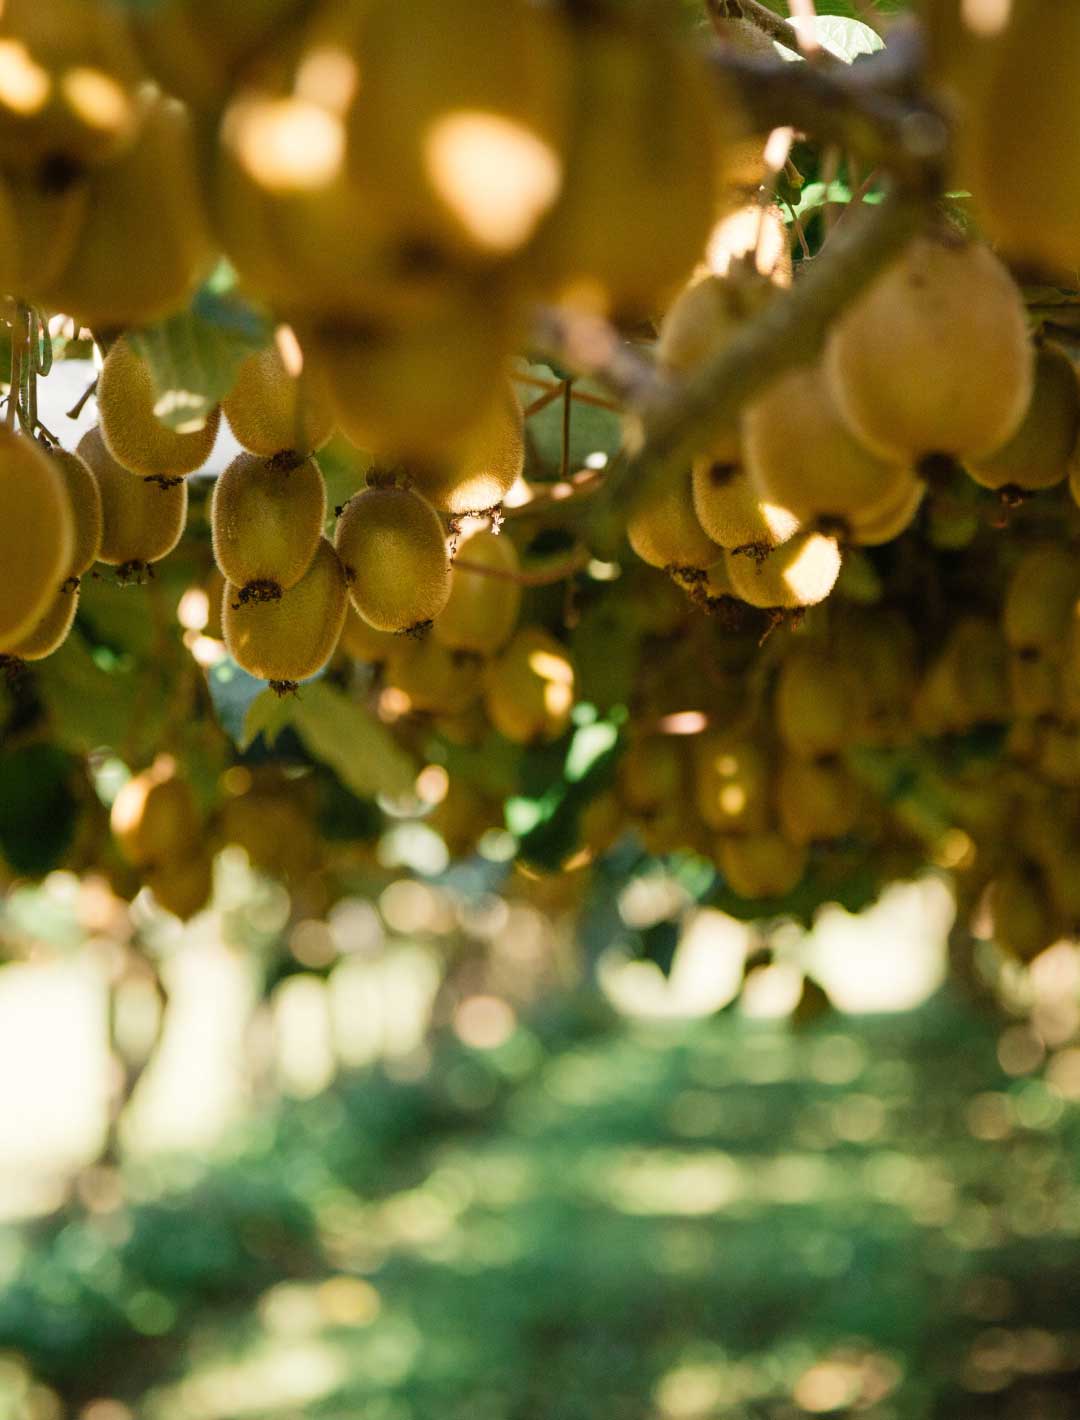 Kiwifruit on vines